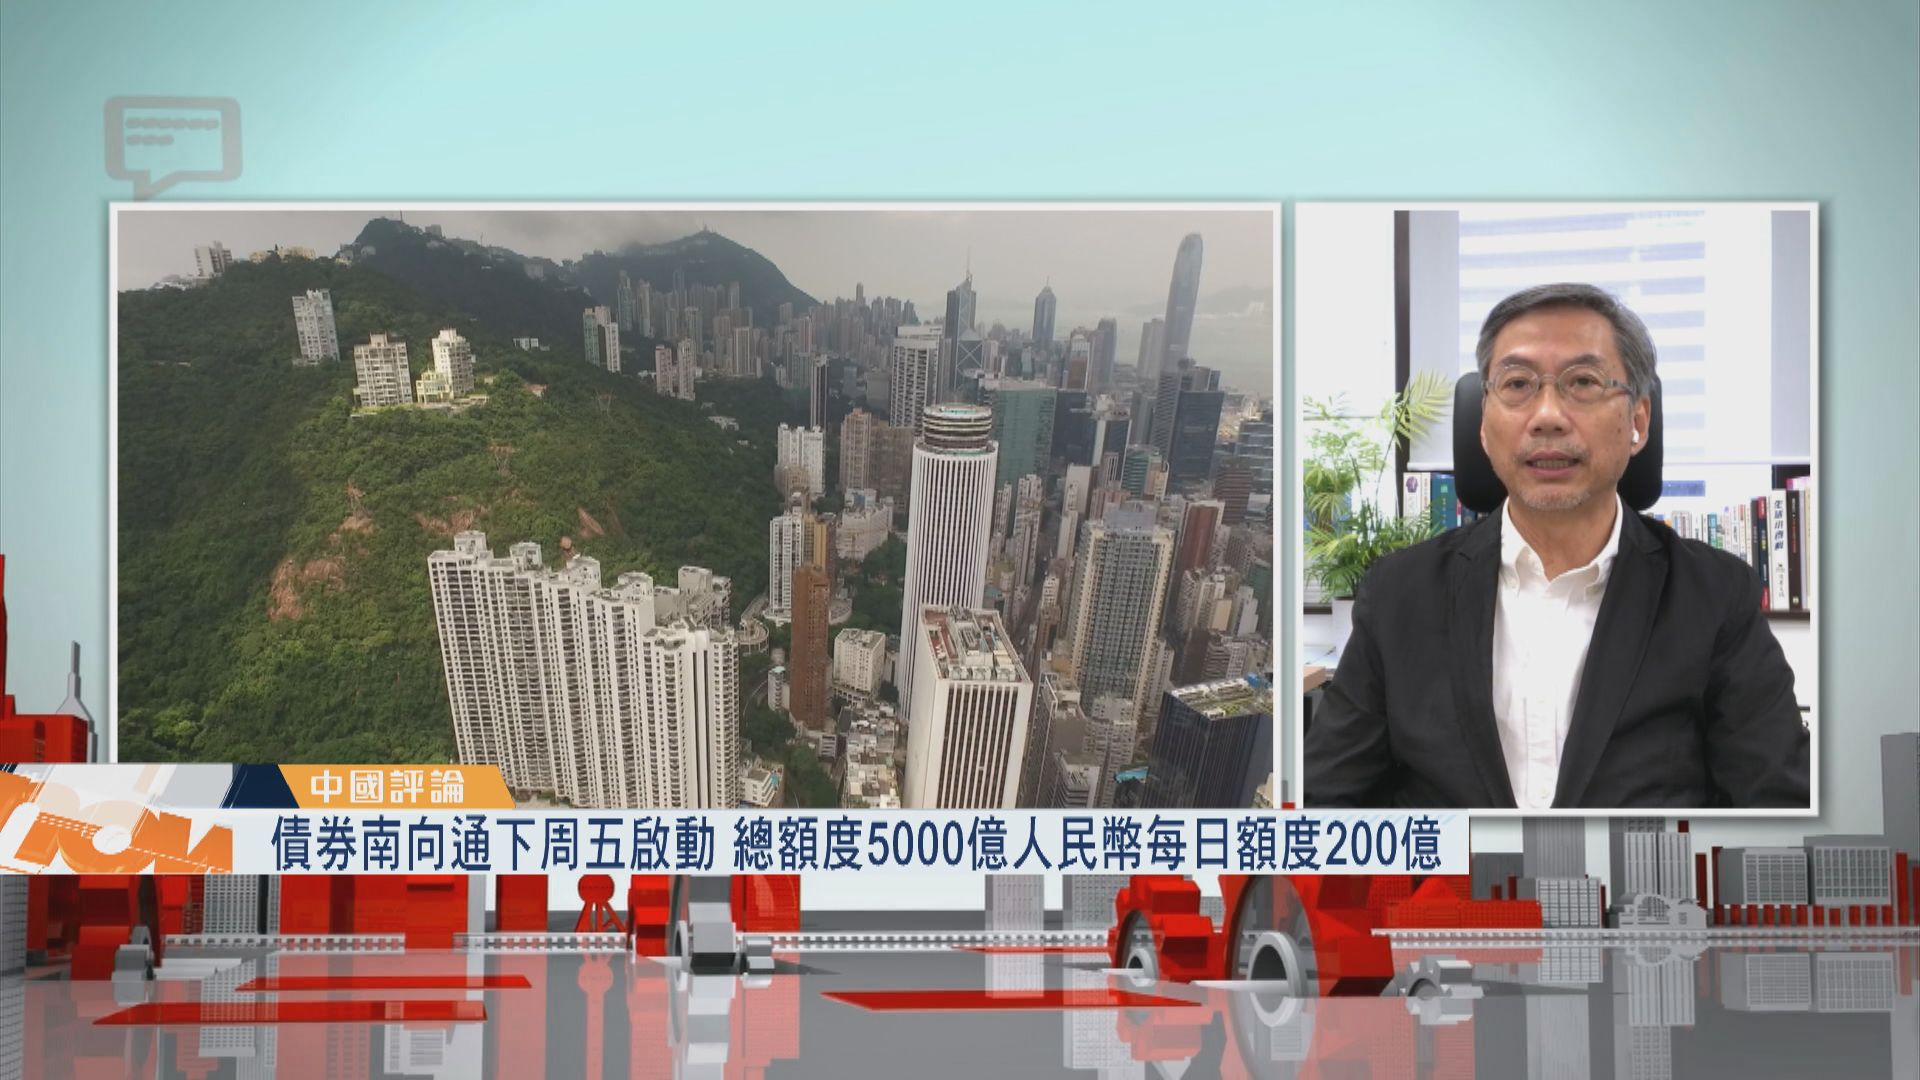 【中國評論】債券南向通對香港有何利好因素?